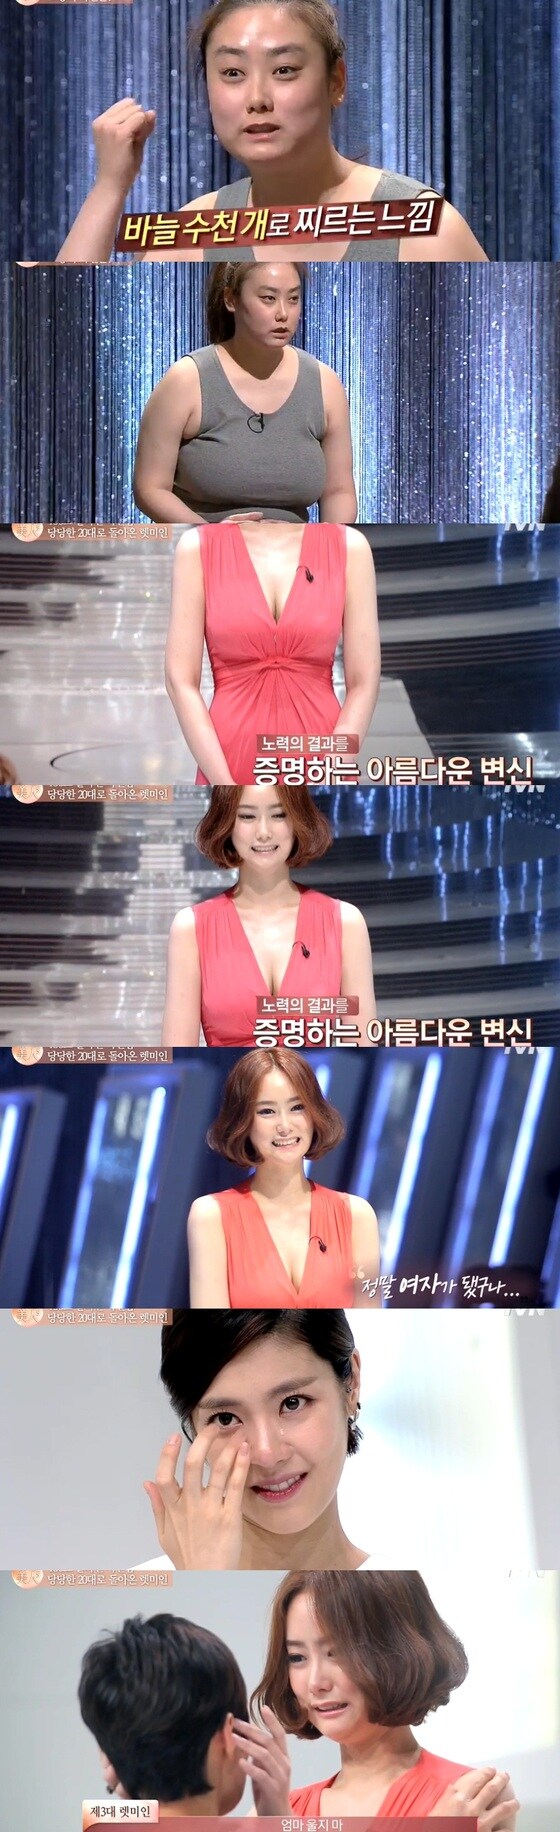 '렛미인5' 지원자 김형수가 역대급 변신으로 모두를 놀라게 했다.© News1스포츠/ tvN 캡쳐